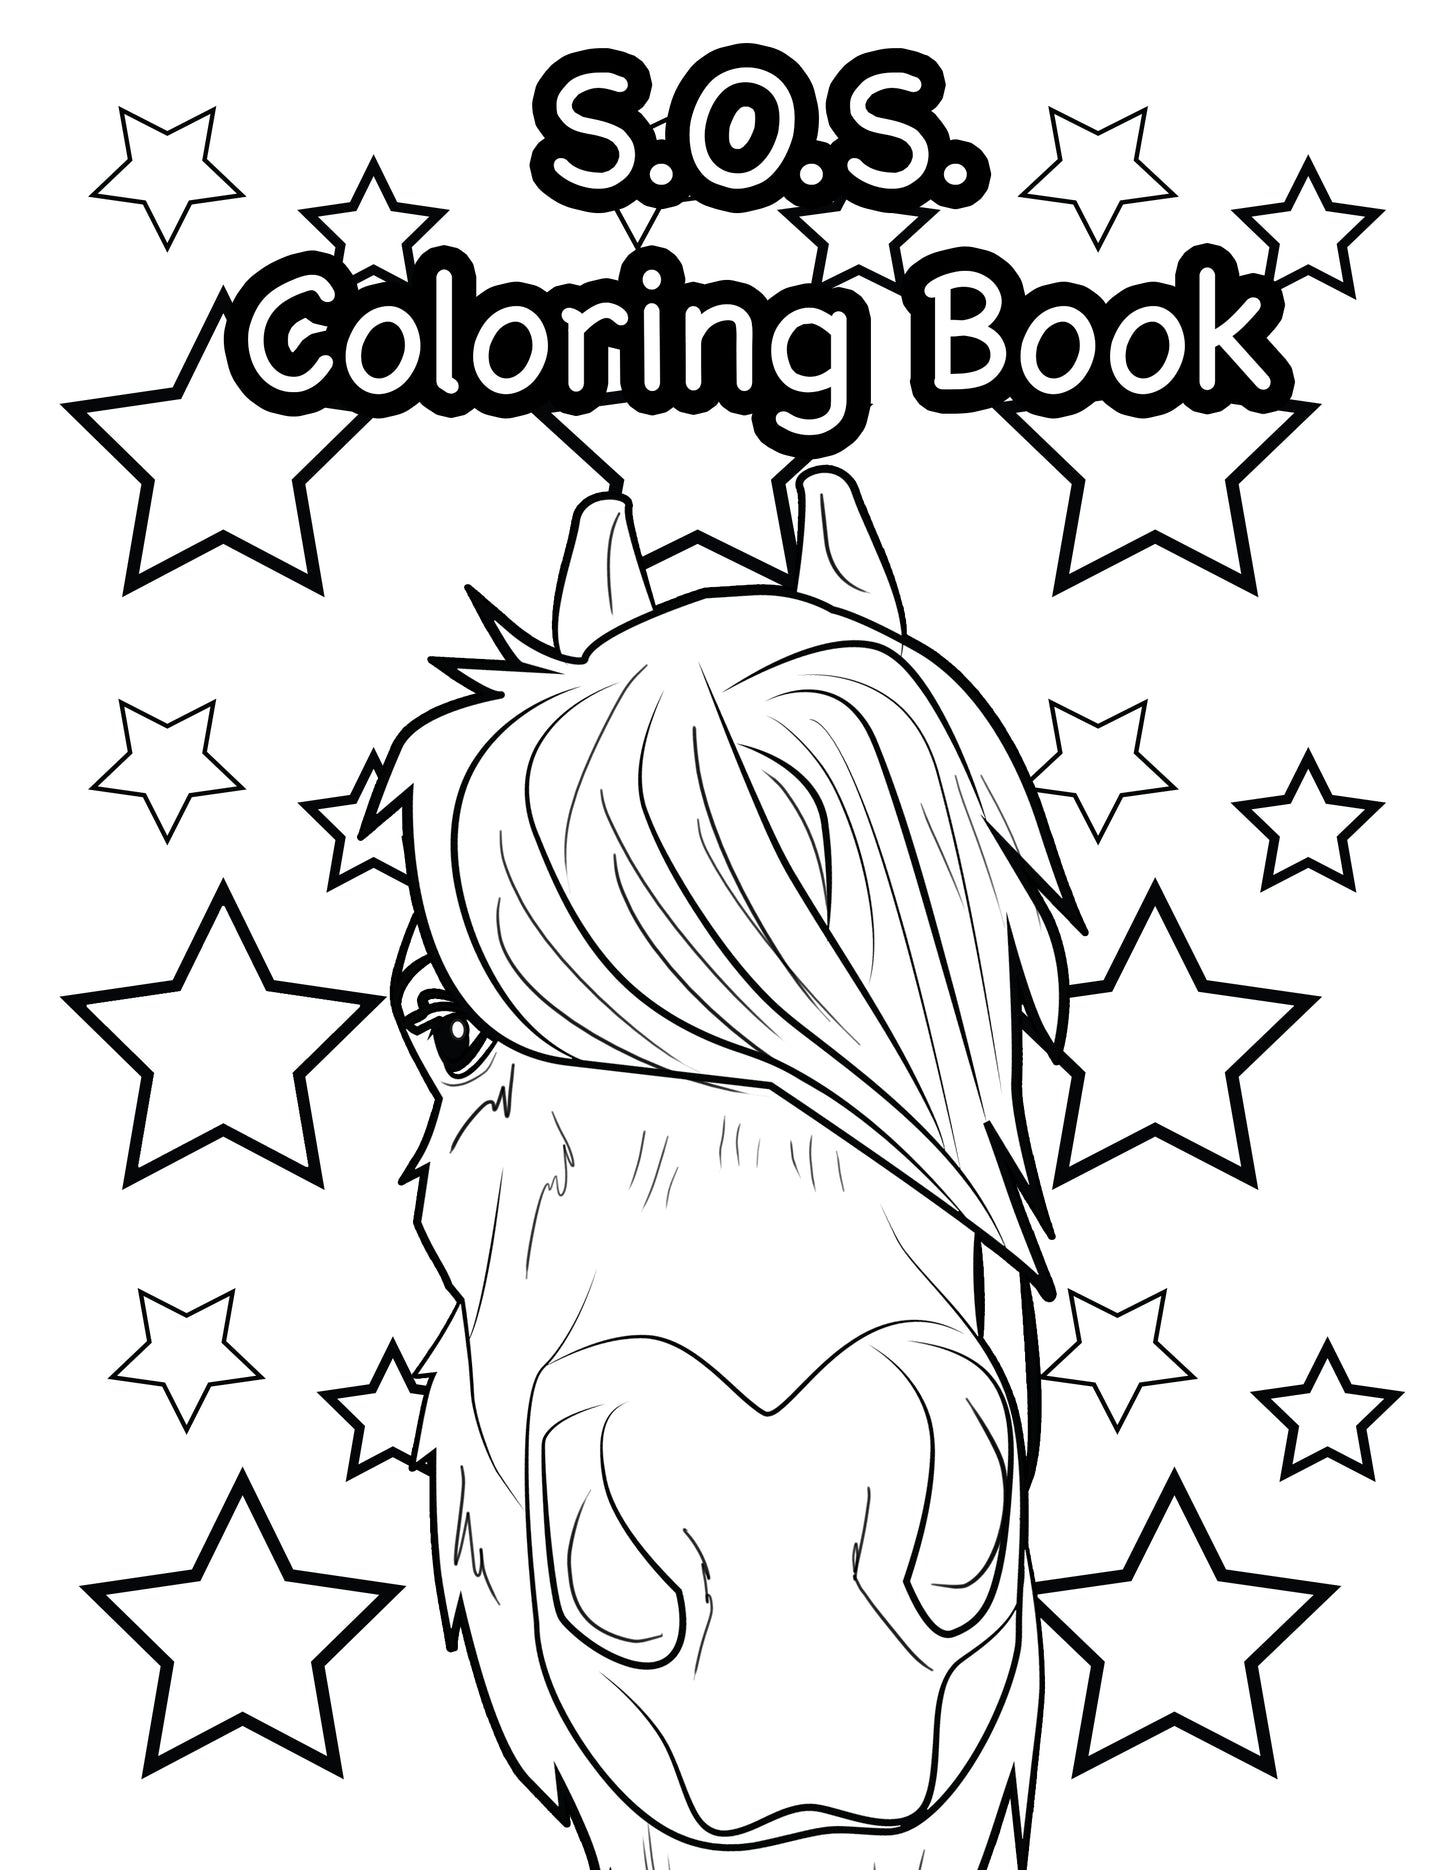 SOS Coloring Book